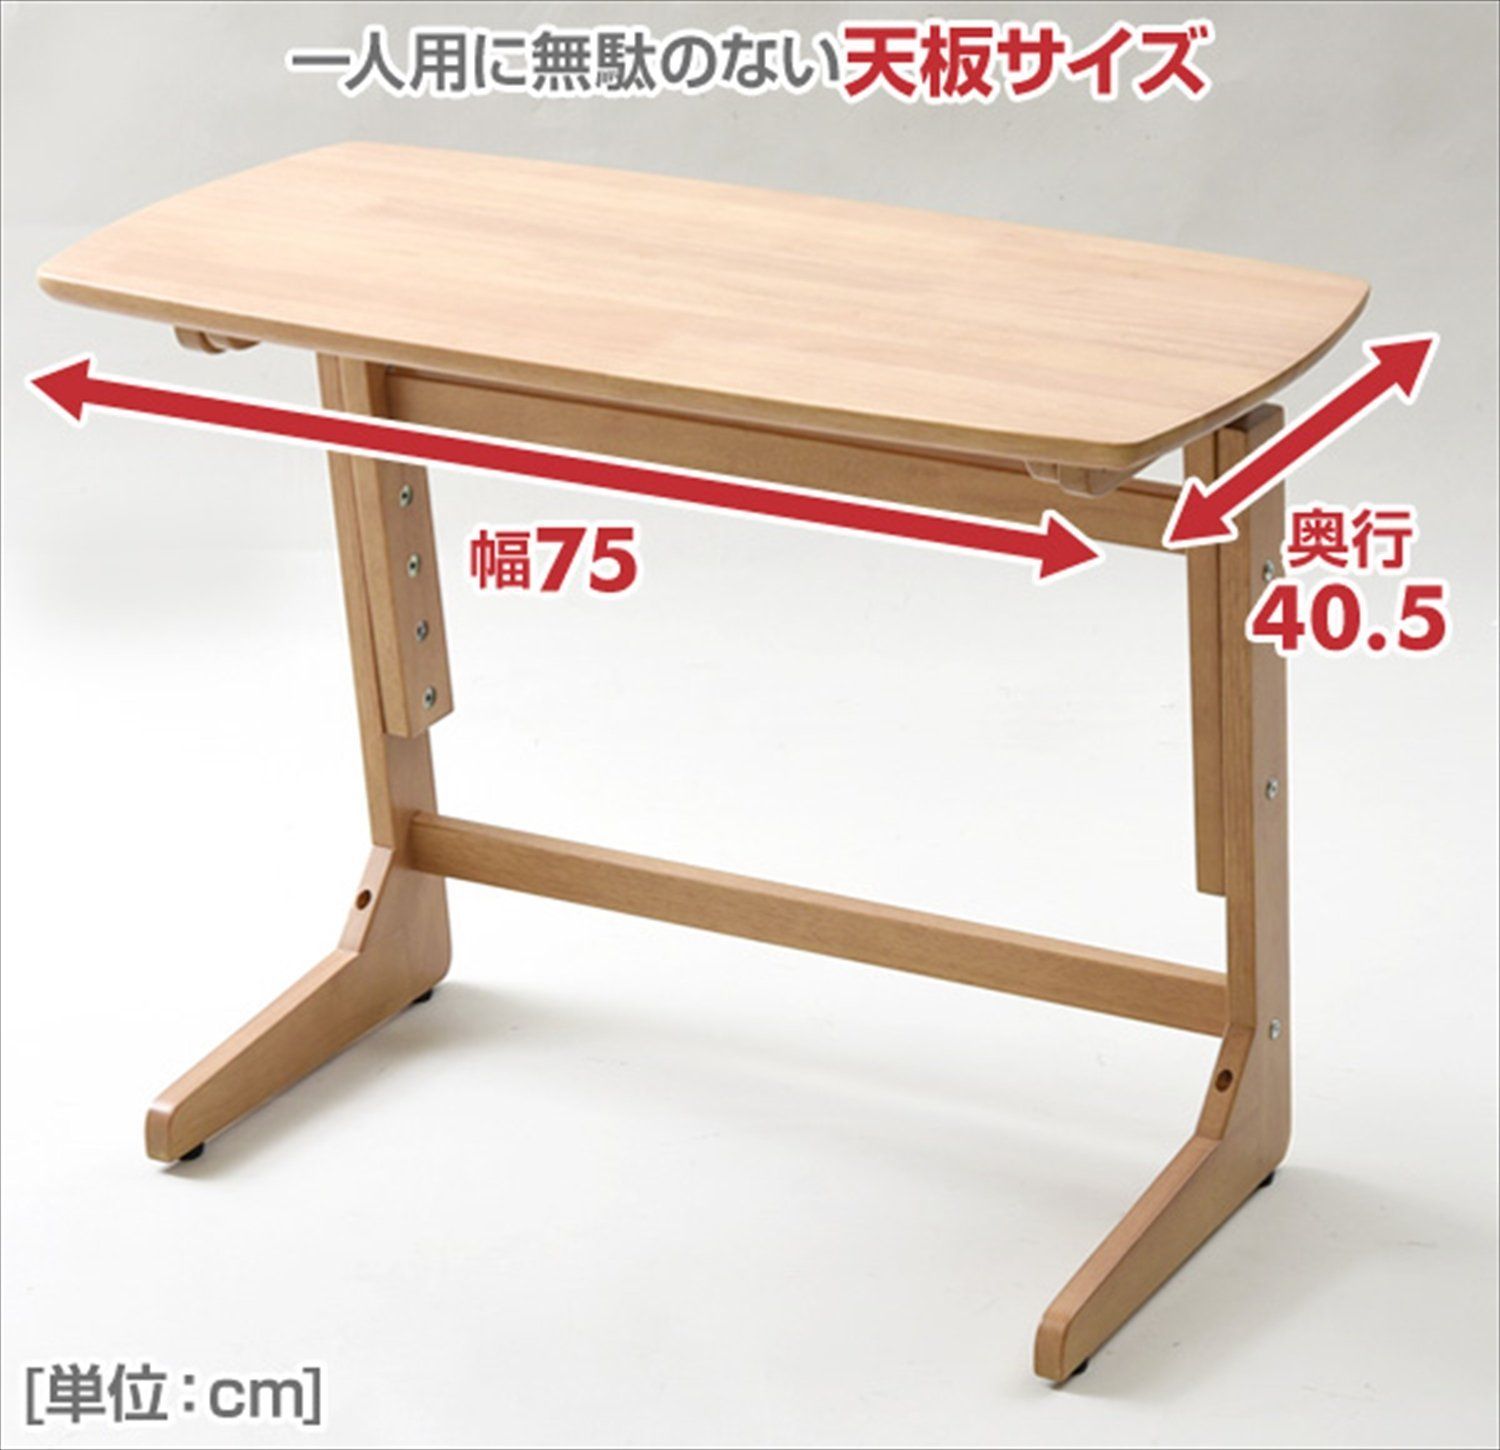 山善 昇降 テーブル 高さ3段階調整 頑丈(耐荷重20?) アジャスター付 幅75×奥行41.5×高さ55 60 65cm 組立品 ウォルナ